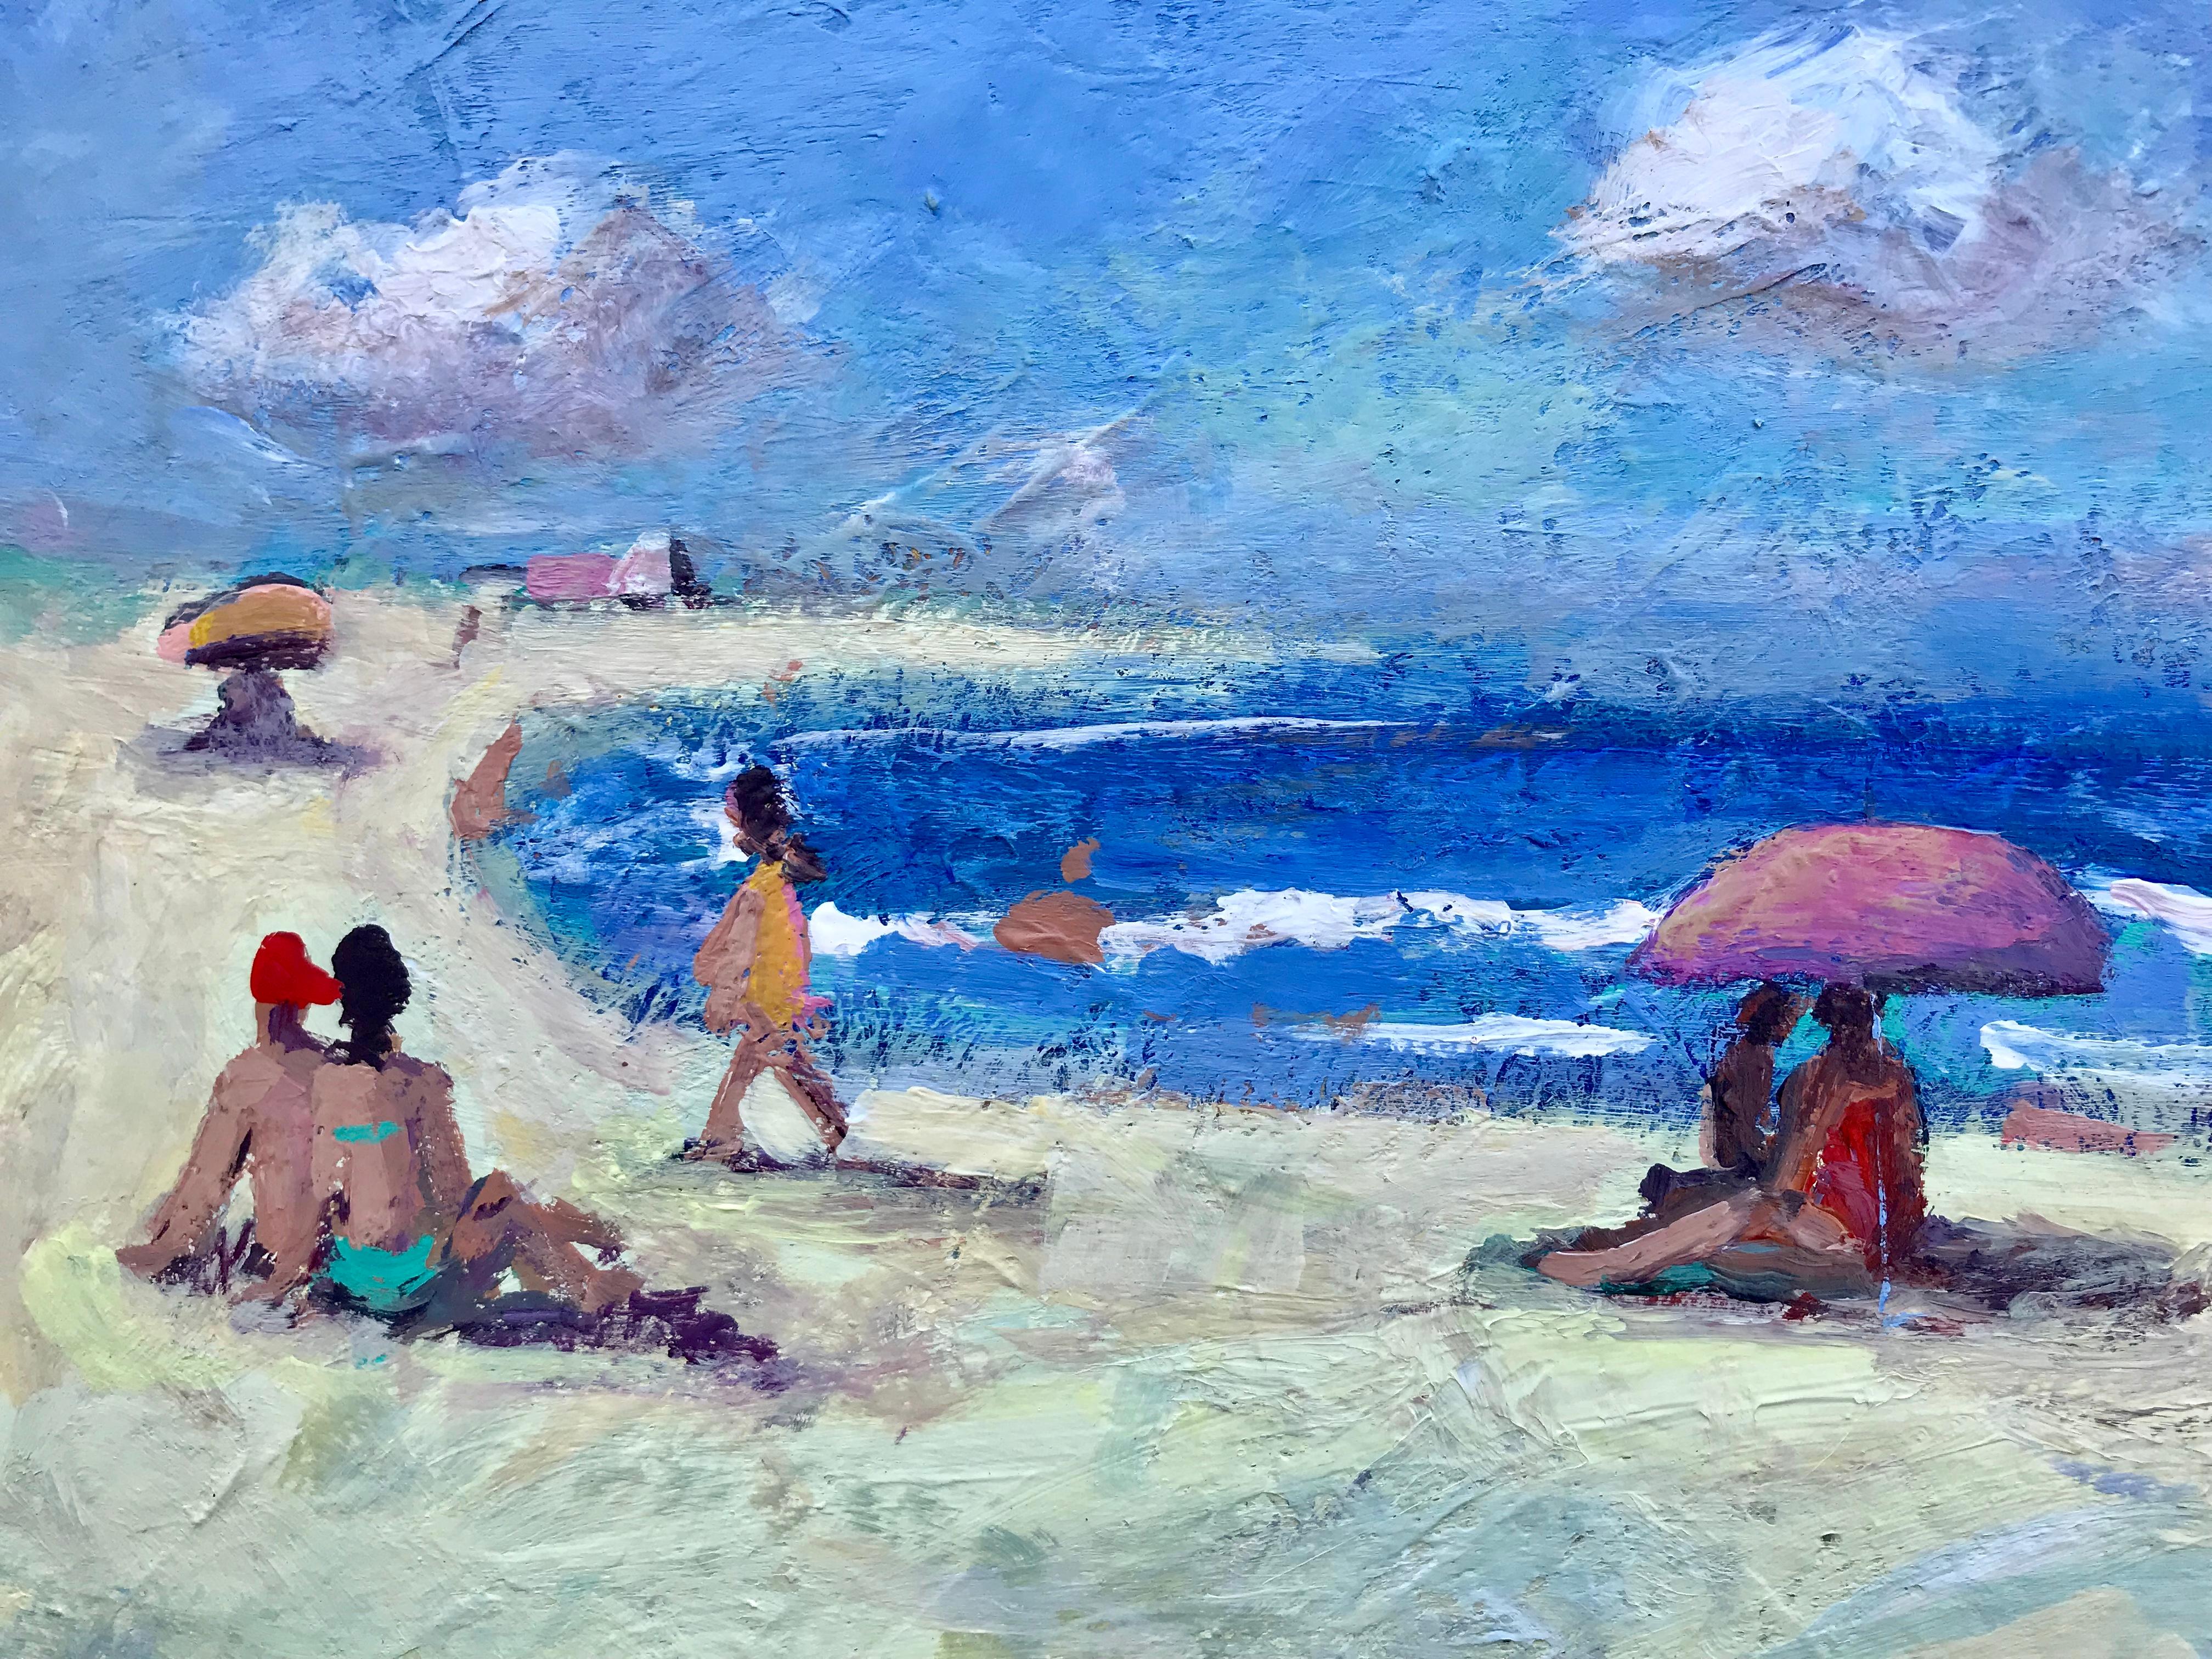 Journée de plage - Post-impressionnisme Painting par John Crimmins